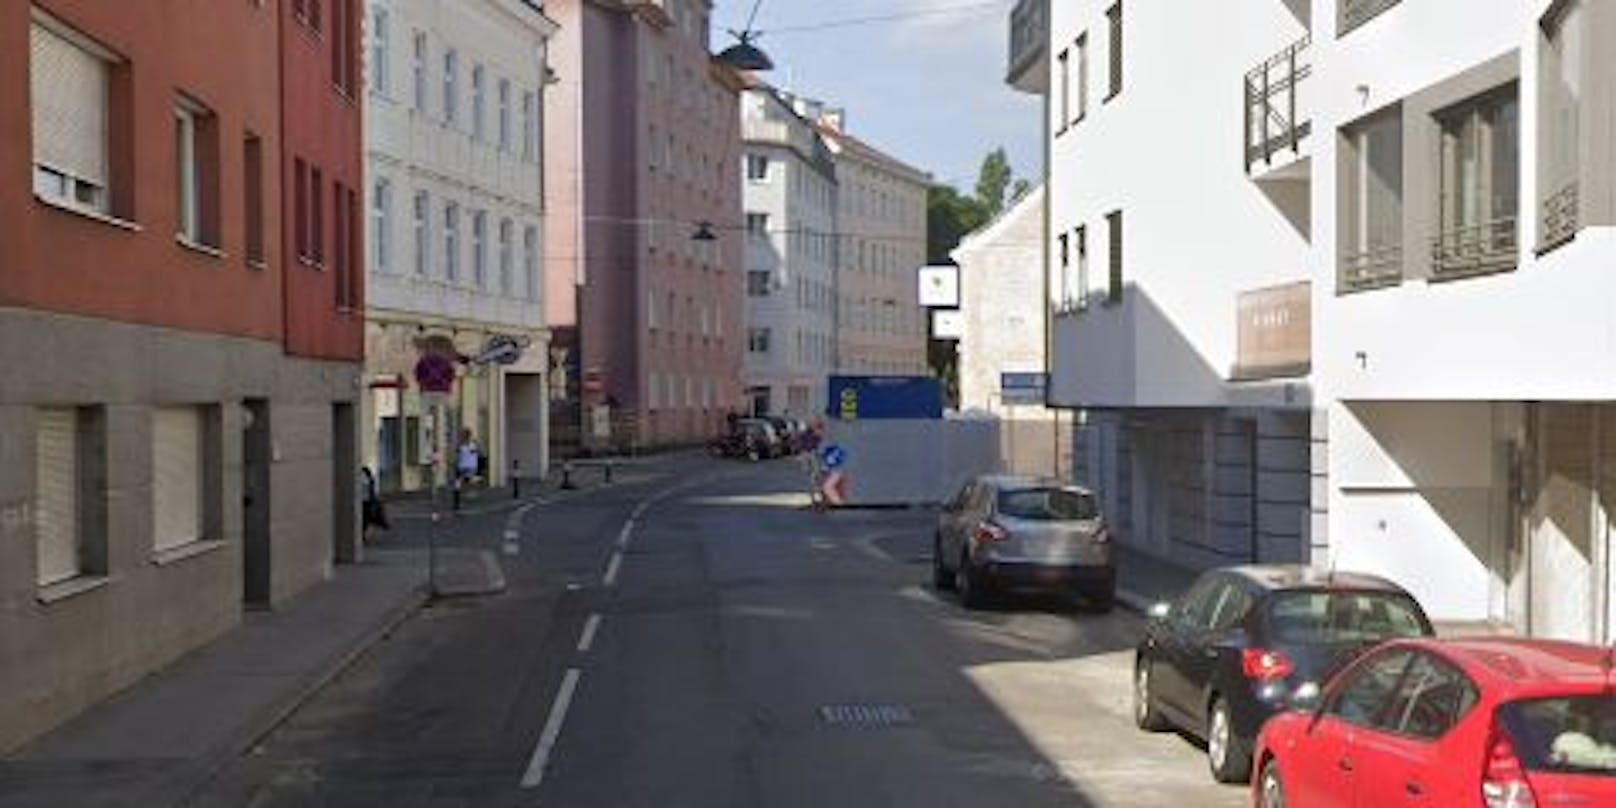 Ein Raubüberfall in der Arndtstraße in Wien-Meidling im Mai 2022 konnte aufgeklärt werden.